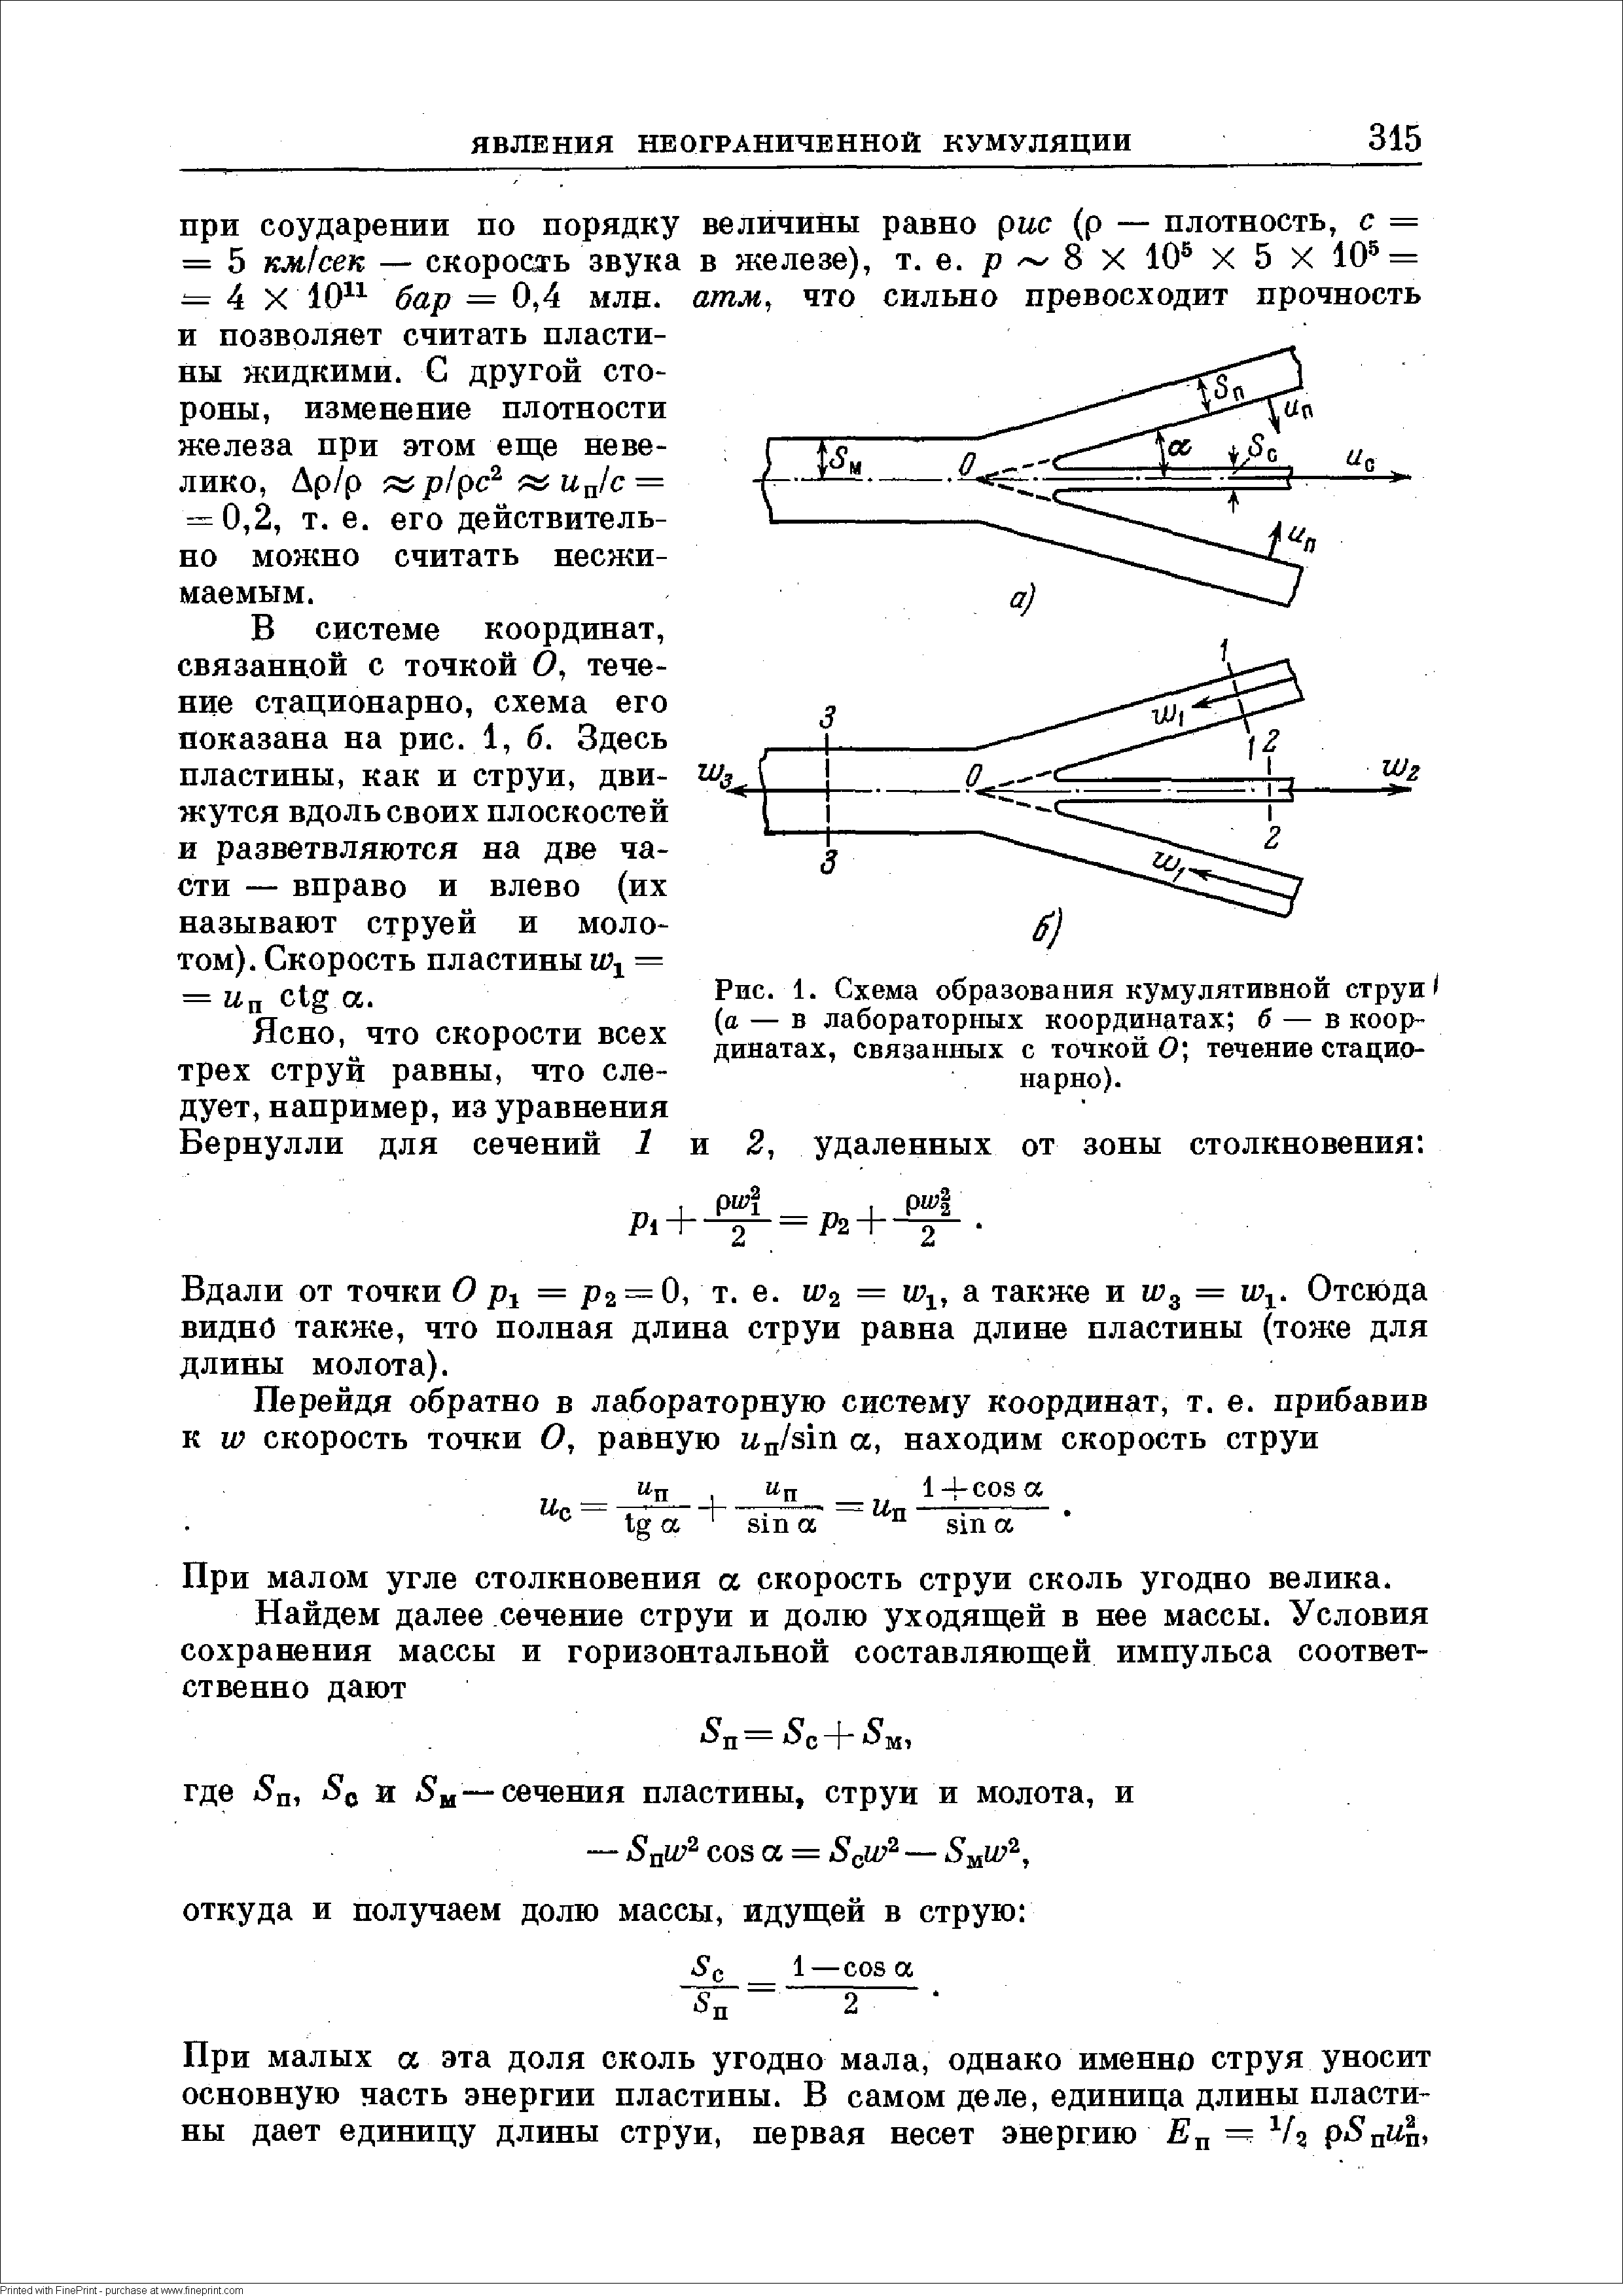 Рис. 1. Схема образования кумулятивной струи (а — в лабораторных координатах б — в координатах, связанных с точкой 0 течение стационарно).
